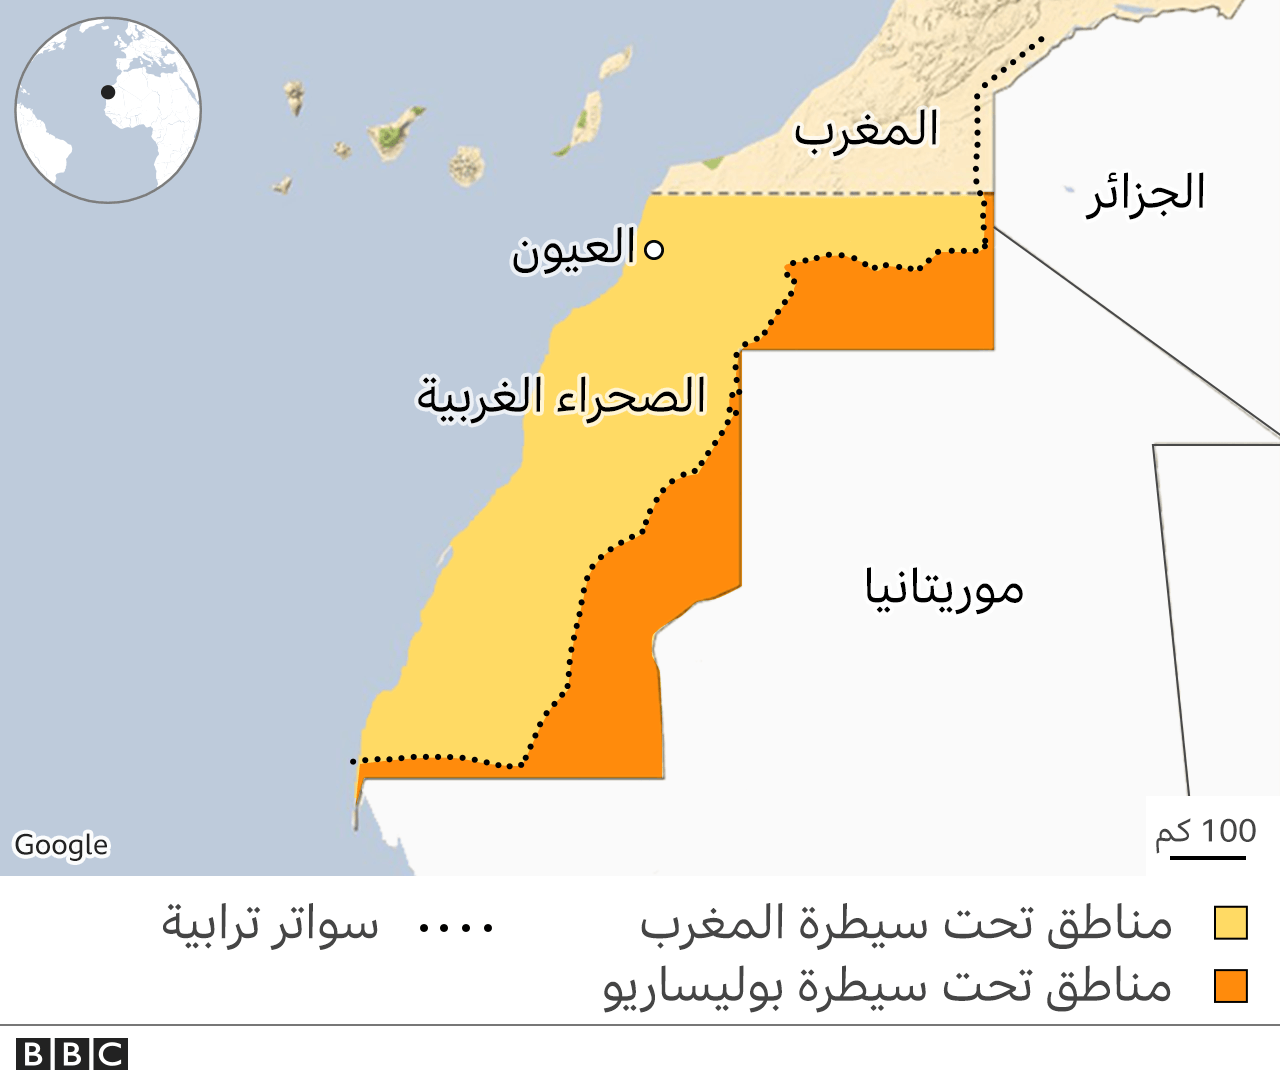 الصحراء الغربية حقائق عن أحد أطول النزاعات في القارة الأفريقية Bbc News عربي